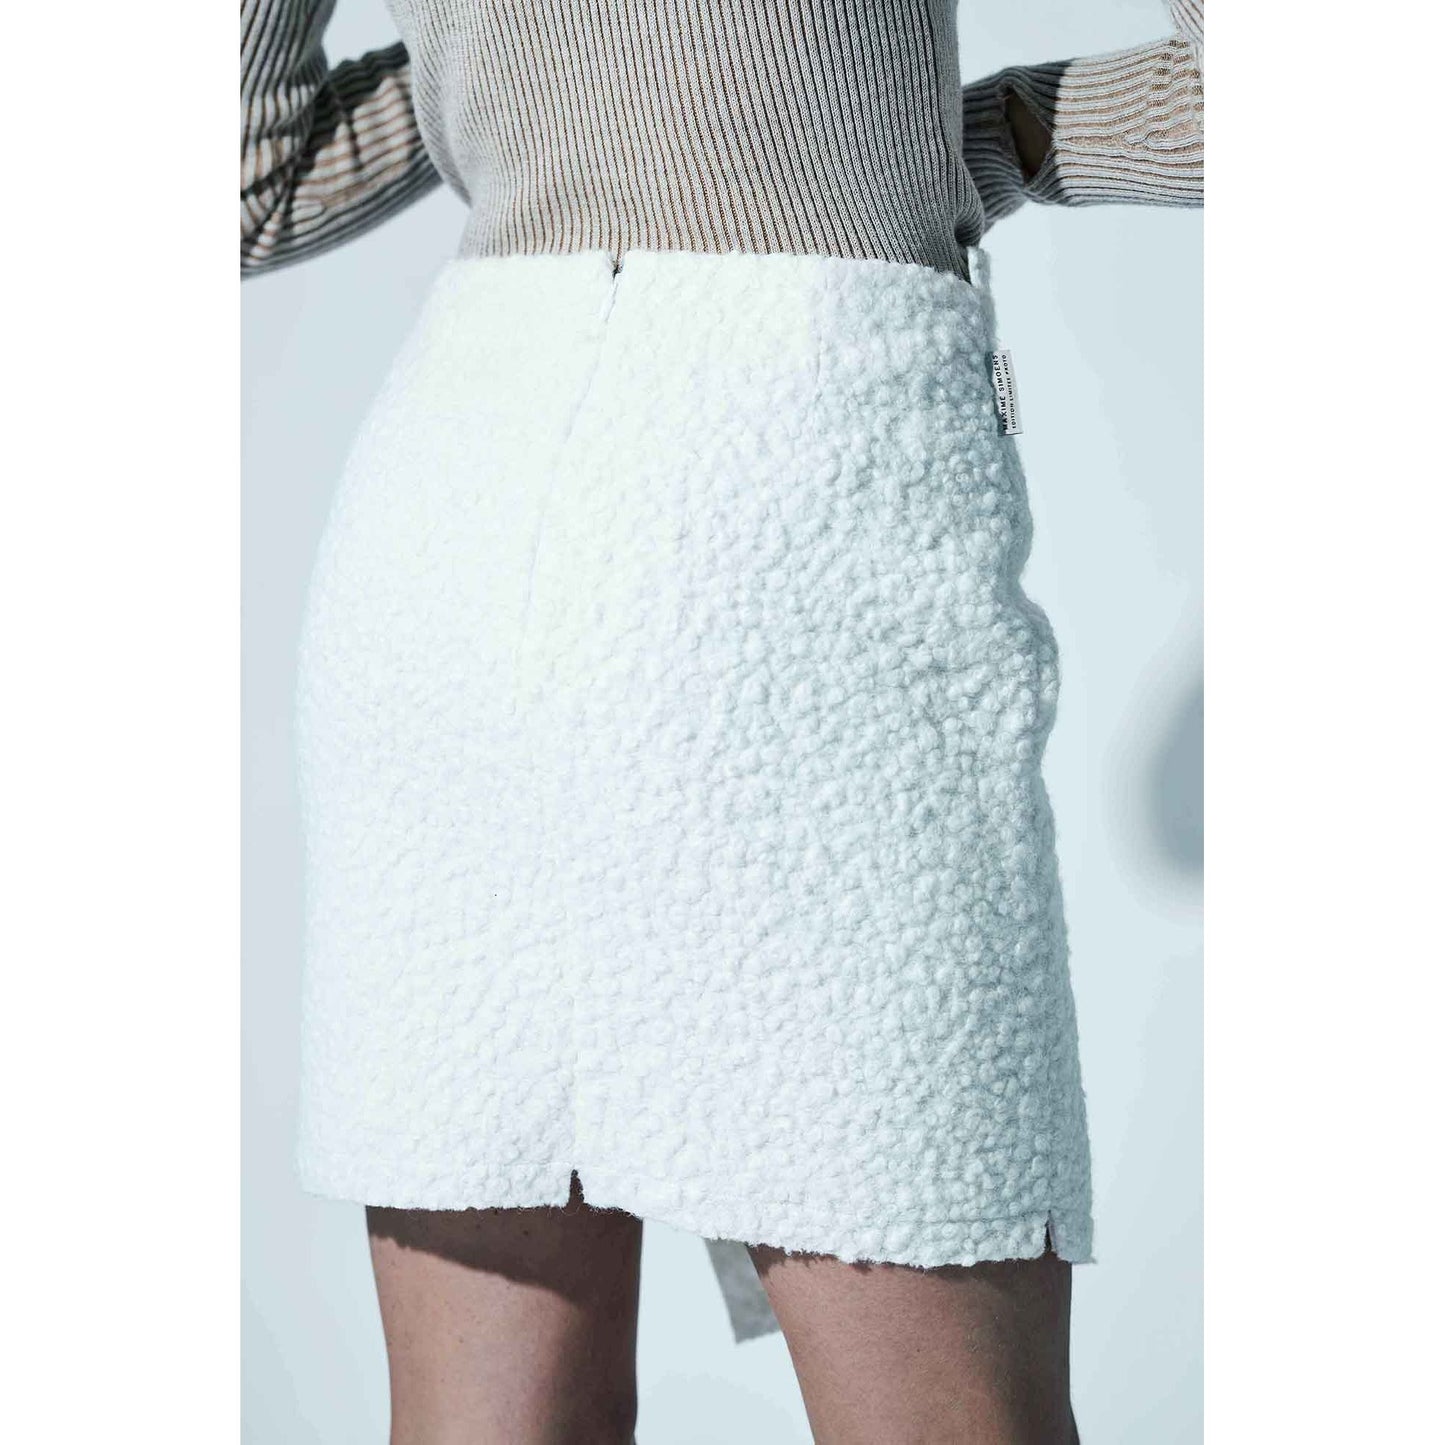 
                  
                    Mini jupe Skirt portefeuille en bouclette de Maxime Simoens Paris - Marquise de Laborde Paris
                  
                